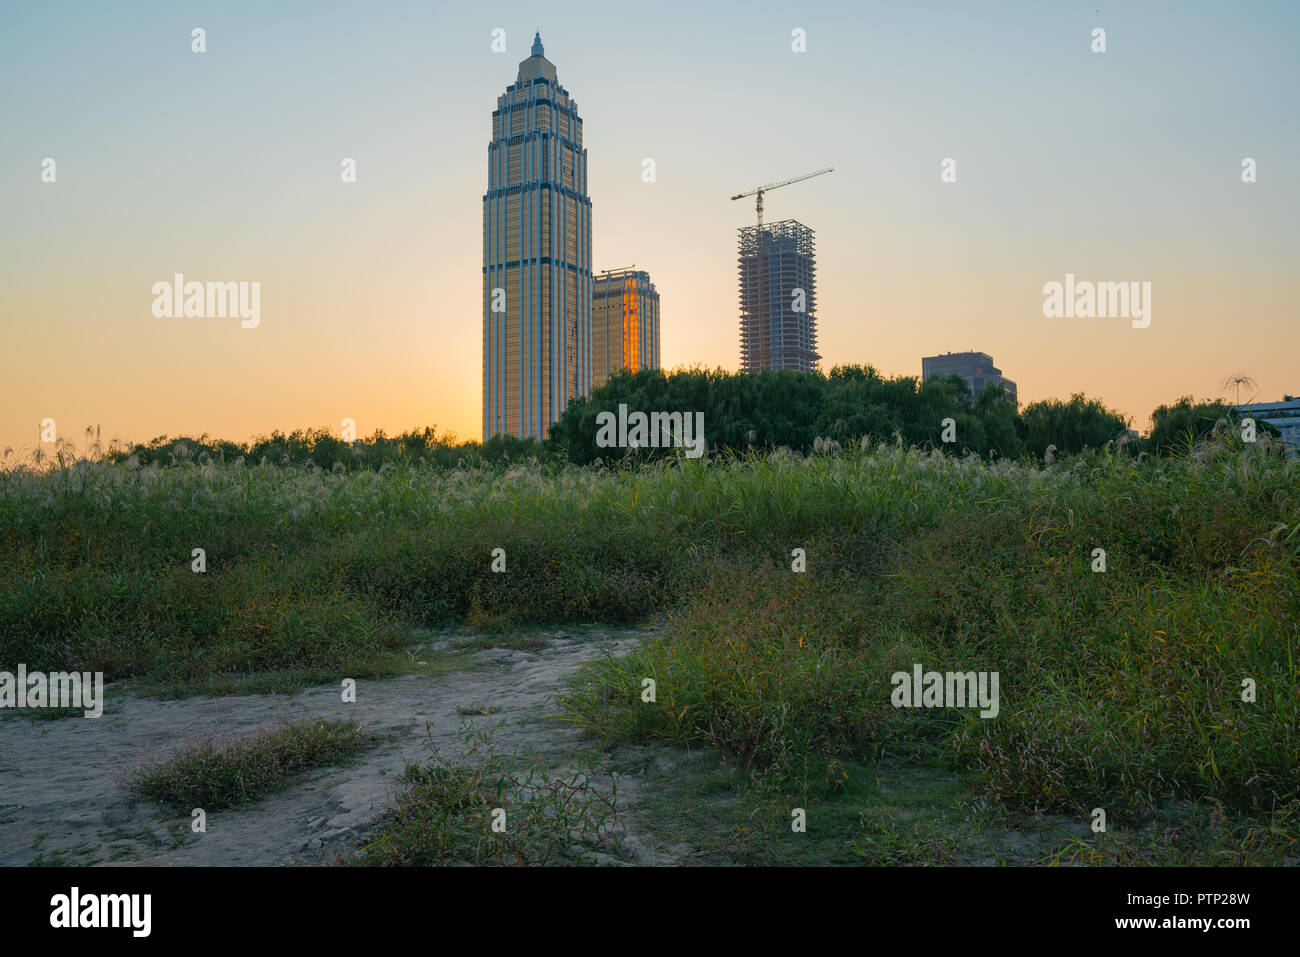 Des bâtiments de la ville se dégagent de la nature , dans le district de Hankou Wuhan Hubei Chine skyline Banque D'Images